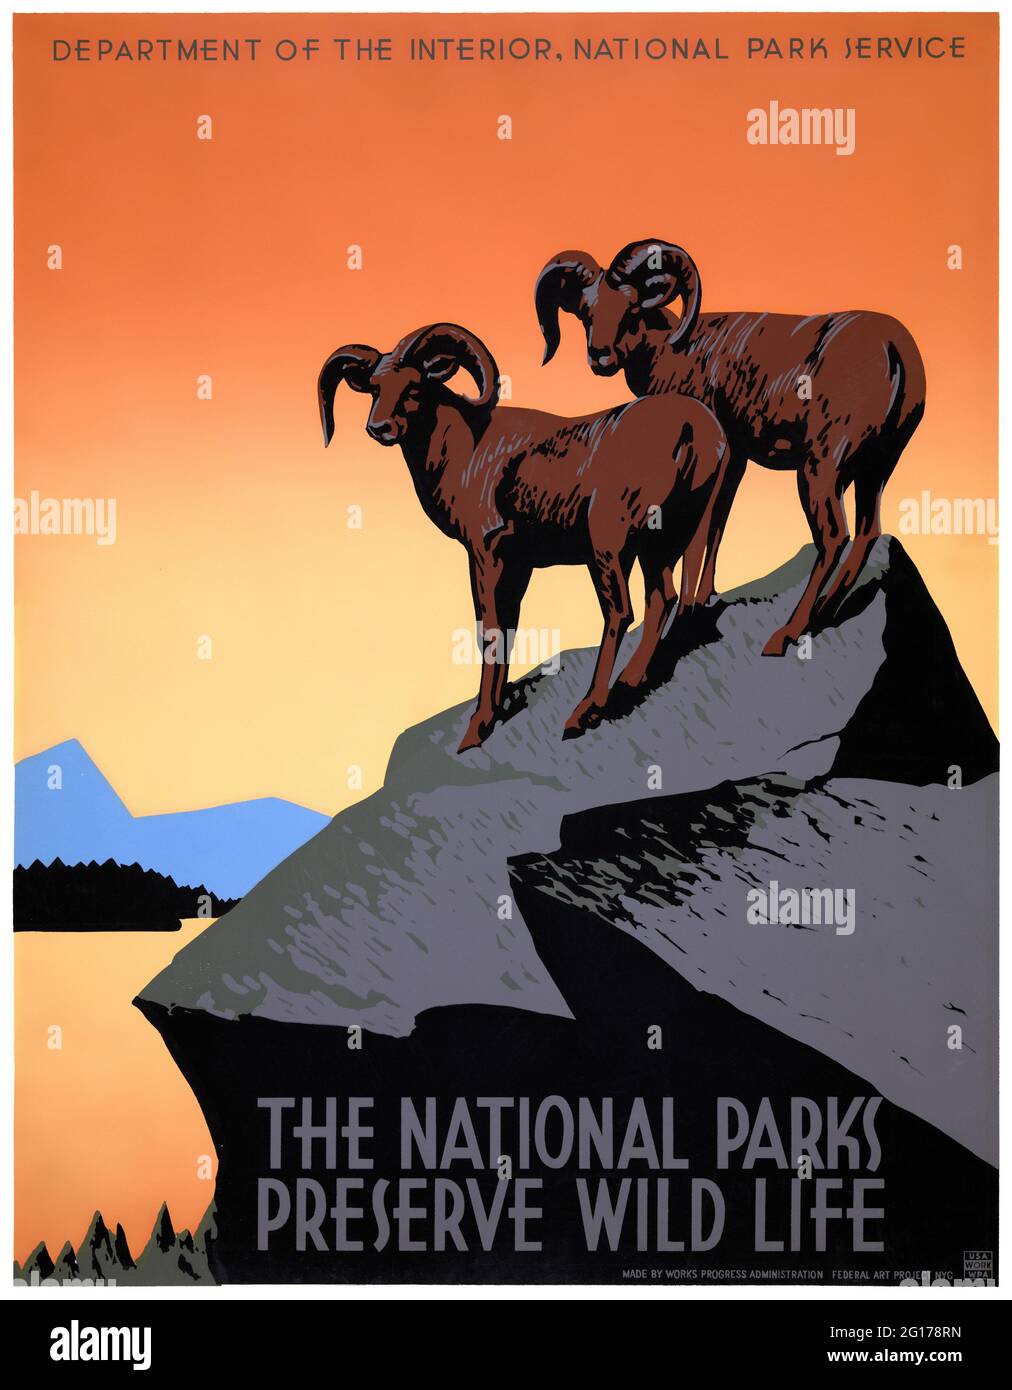 Die Nationalparks bewahren das wilde Leben von J. (Joseph) Hirt (1879-1943). Restauriertes Vintage-WPA-Poster, das 1935 in den USA veröffentlicht wurde. Stockfoto